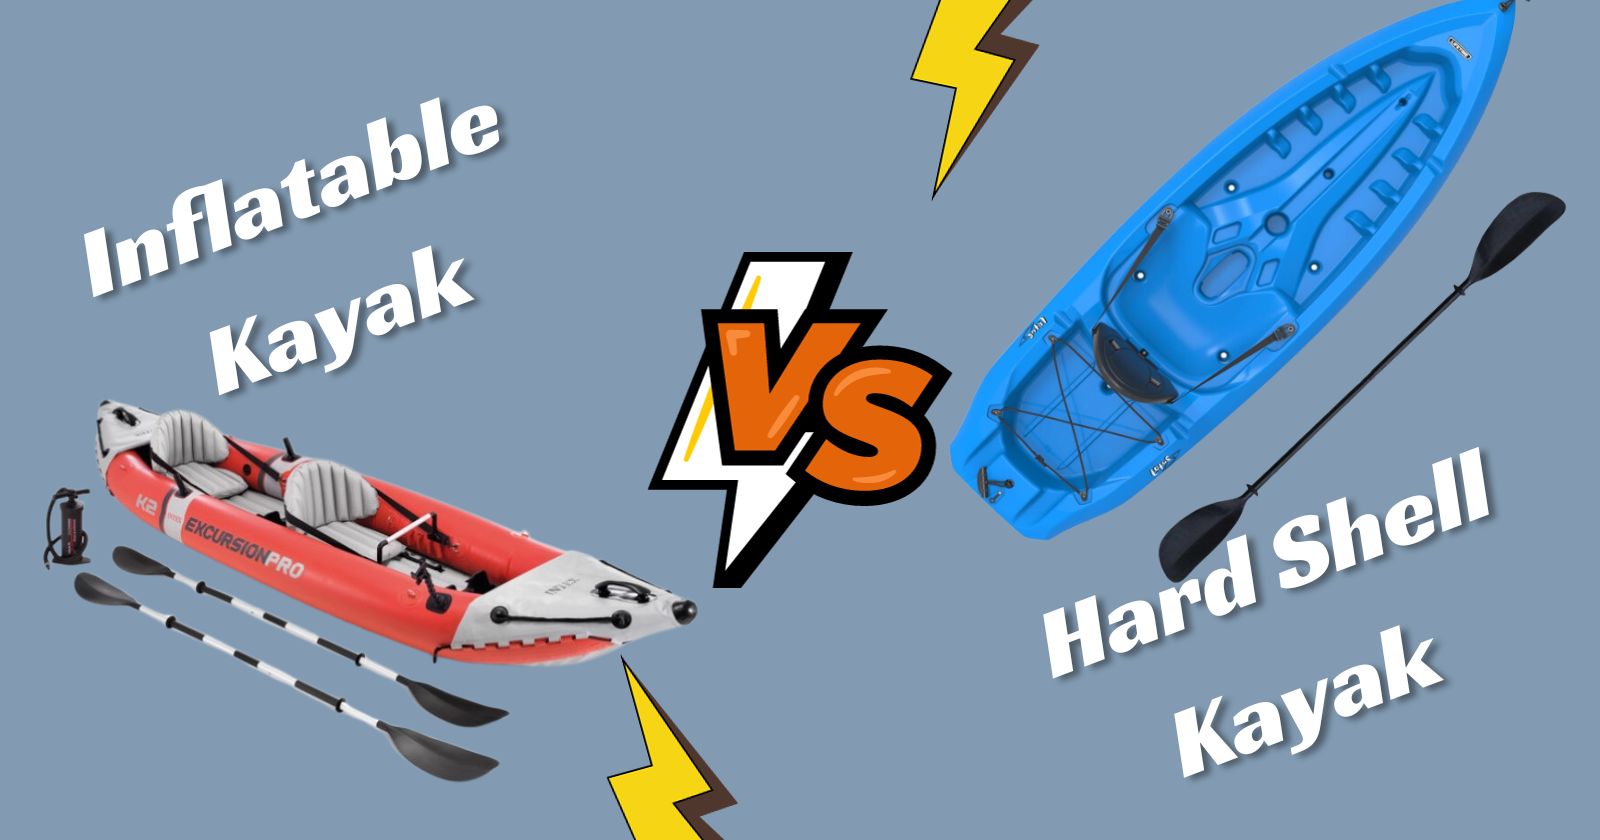 Inflatable Kayak vs Hard Shell Kayak